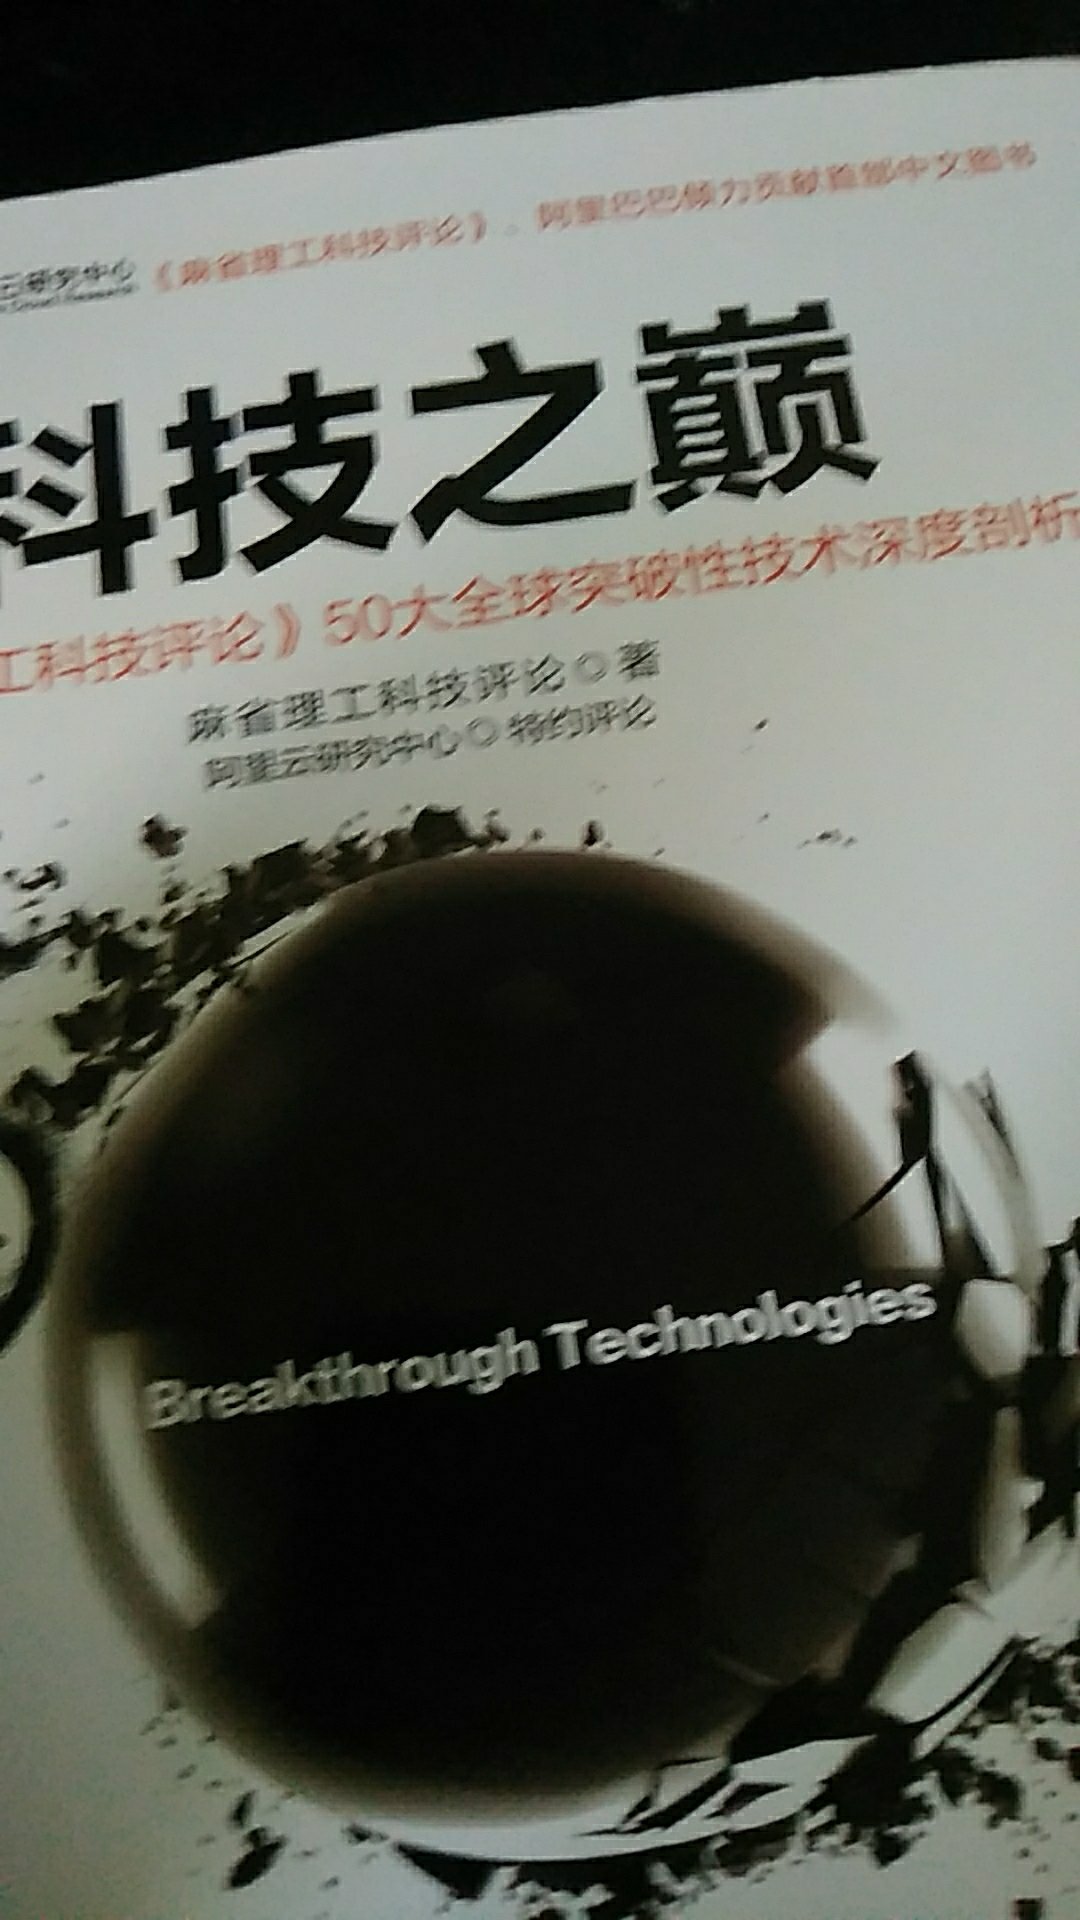 这本书挺不错的，可以买来看看，科技之巅。。